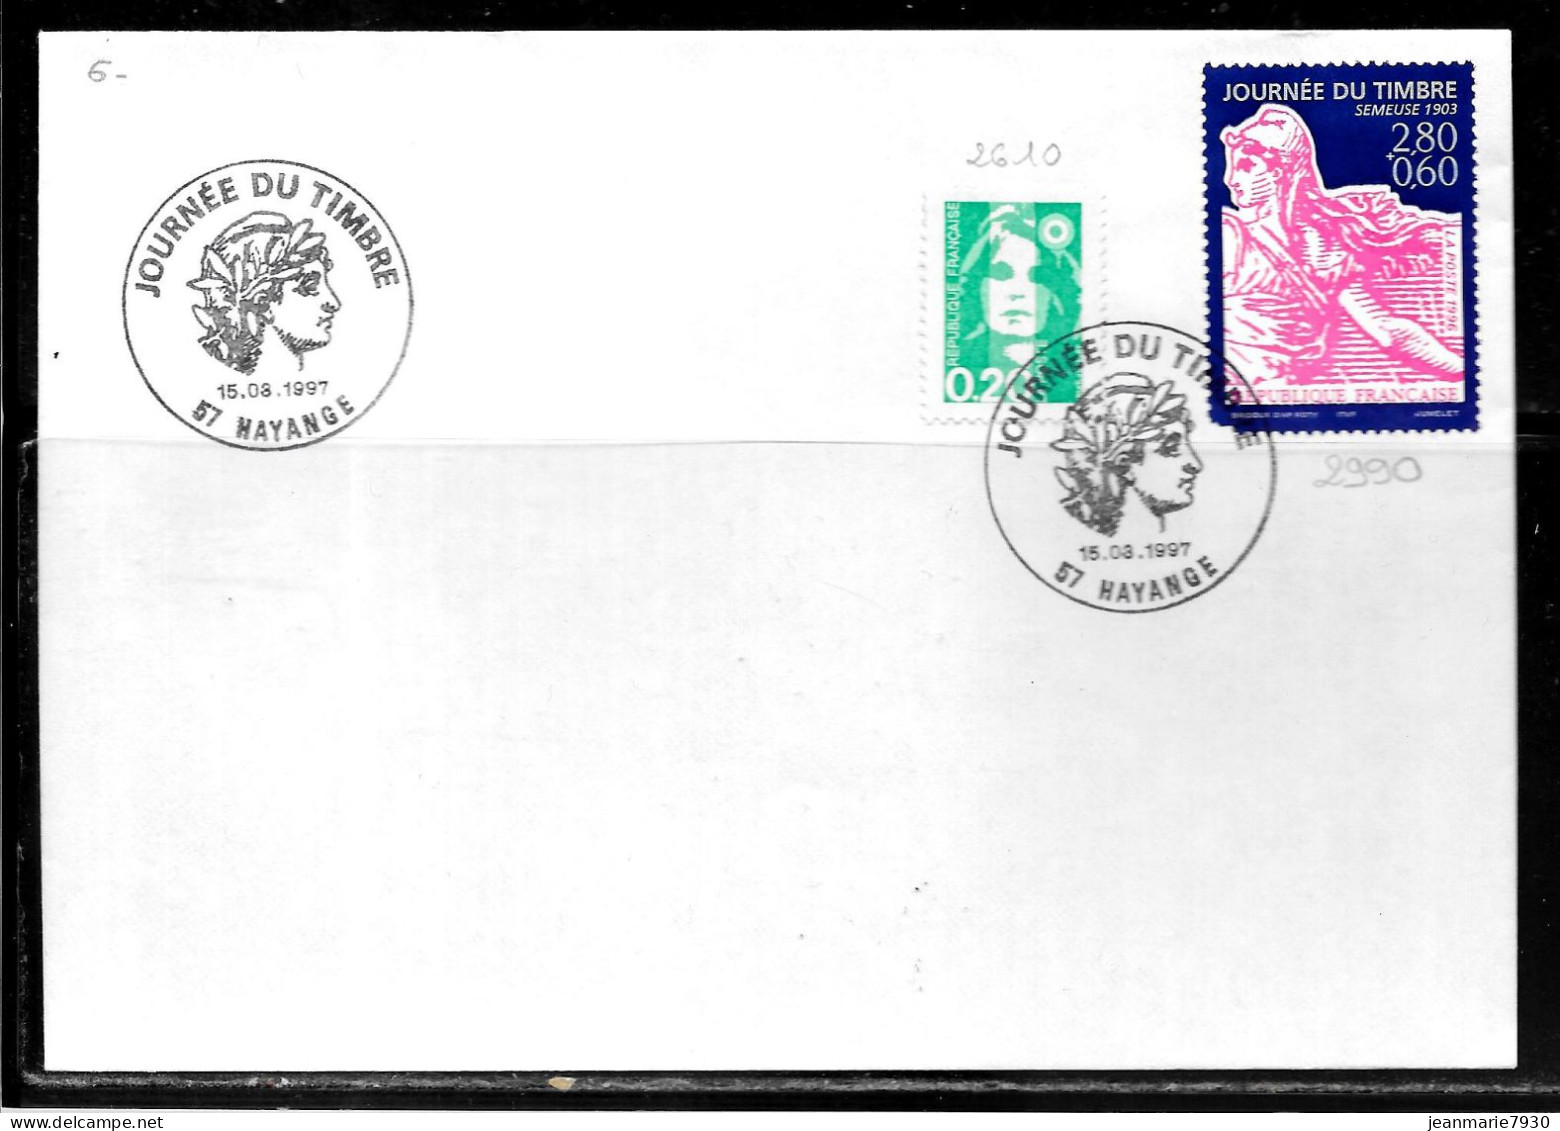 K179 - MARIANNE DE BRIAT 0.30 C Et N° 2990 SUR LETTRE DE HAYANGE DU 15/03/97 - JOURNEE DU TIMBRE - Commemorative Postmarks